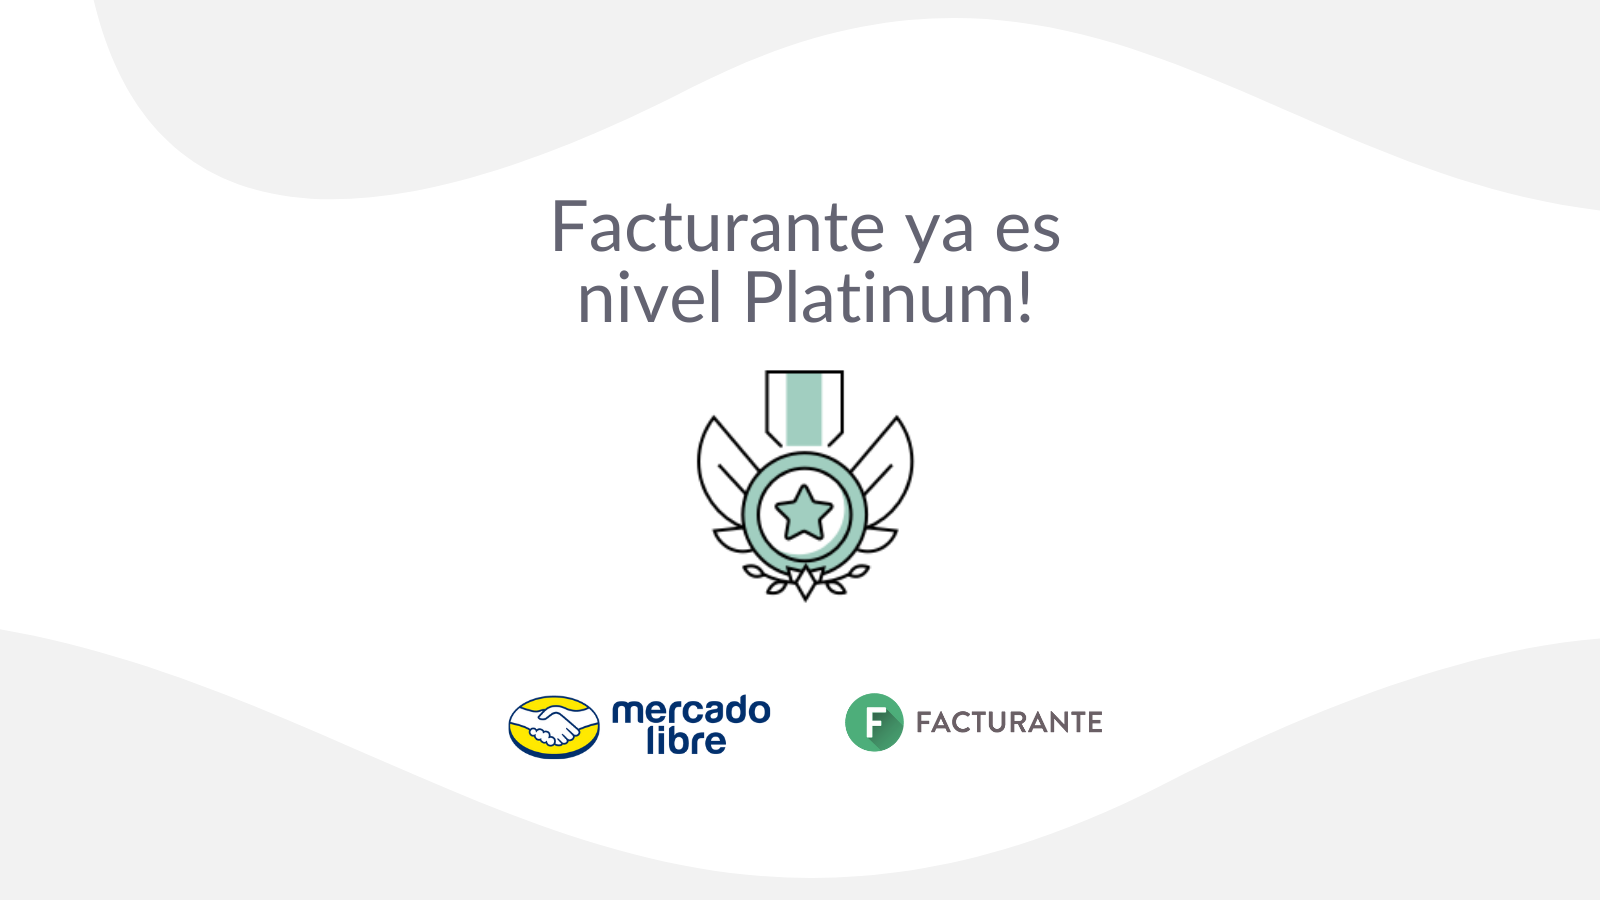 Facturante es Platinum en Mercado Libre